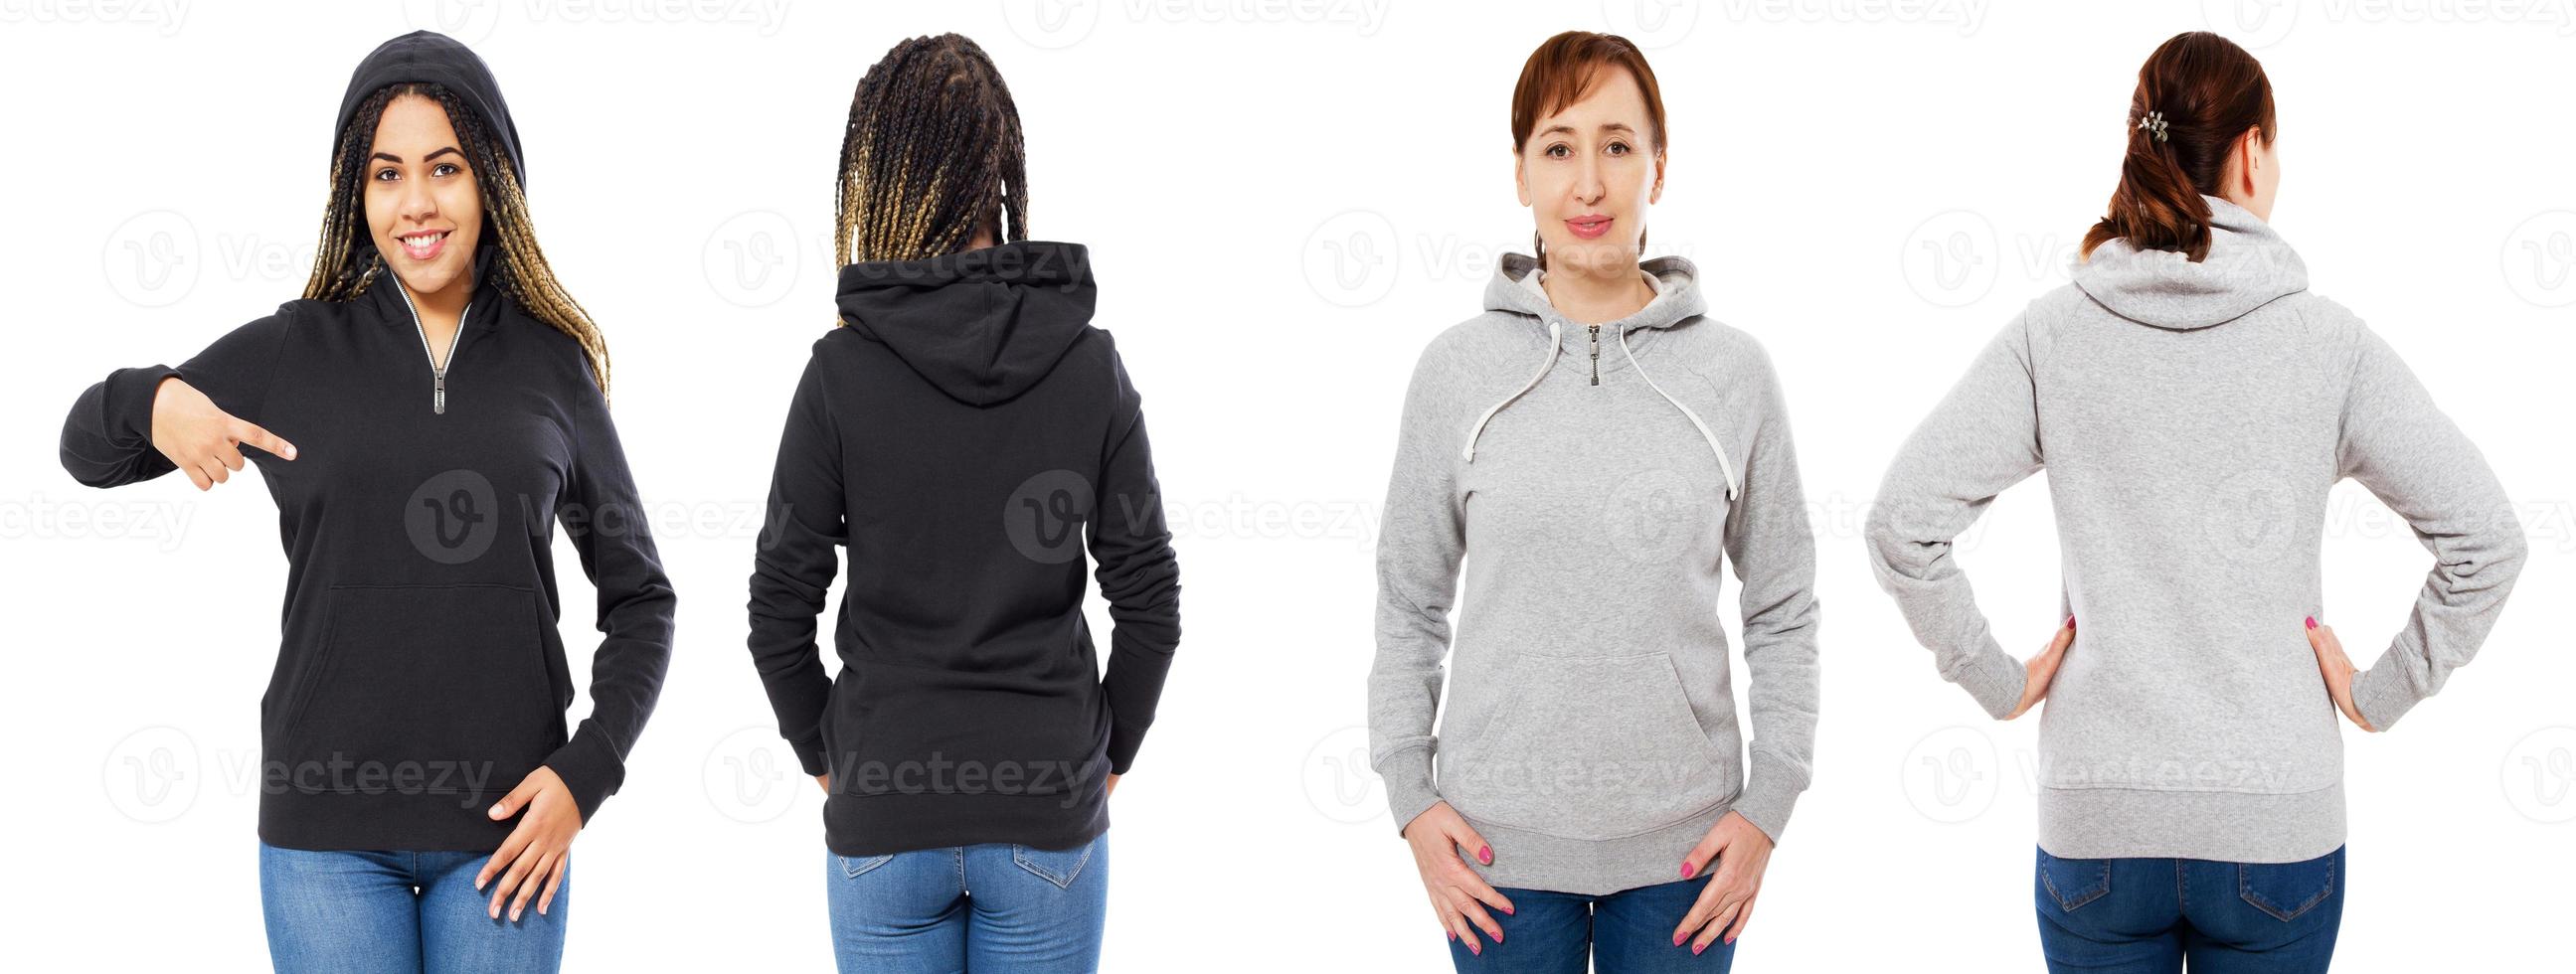 twee vrouw in grijze zwarte hoodie mock-up geïsoleerde collage set over white foto